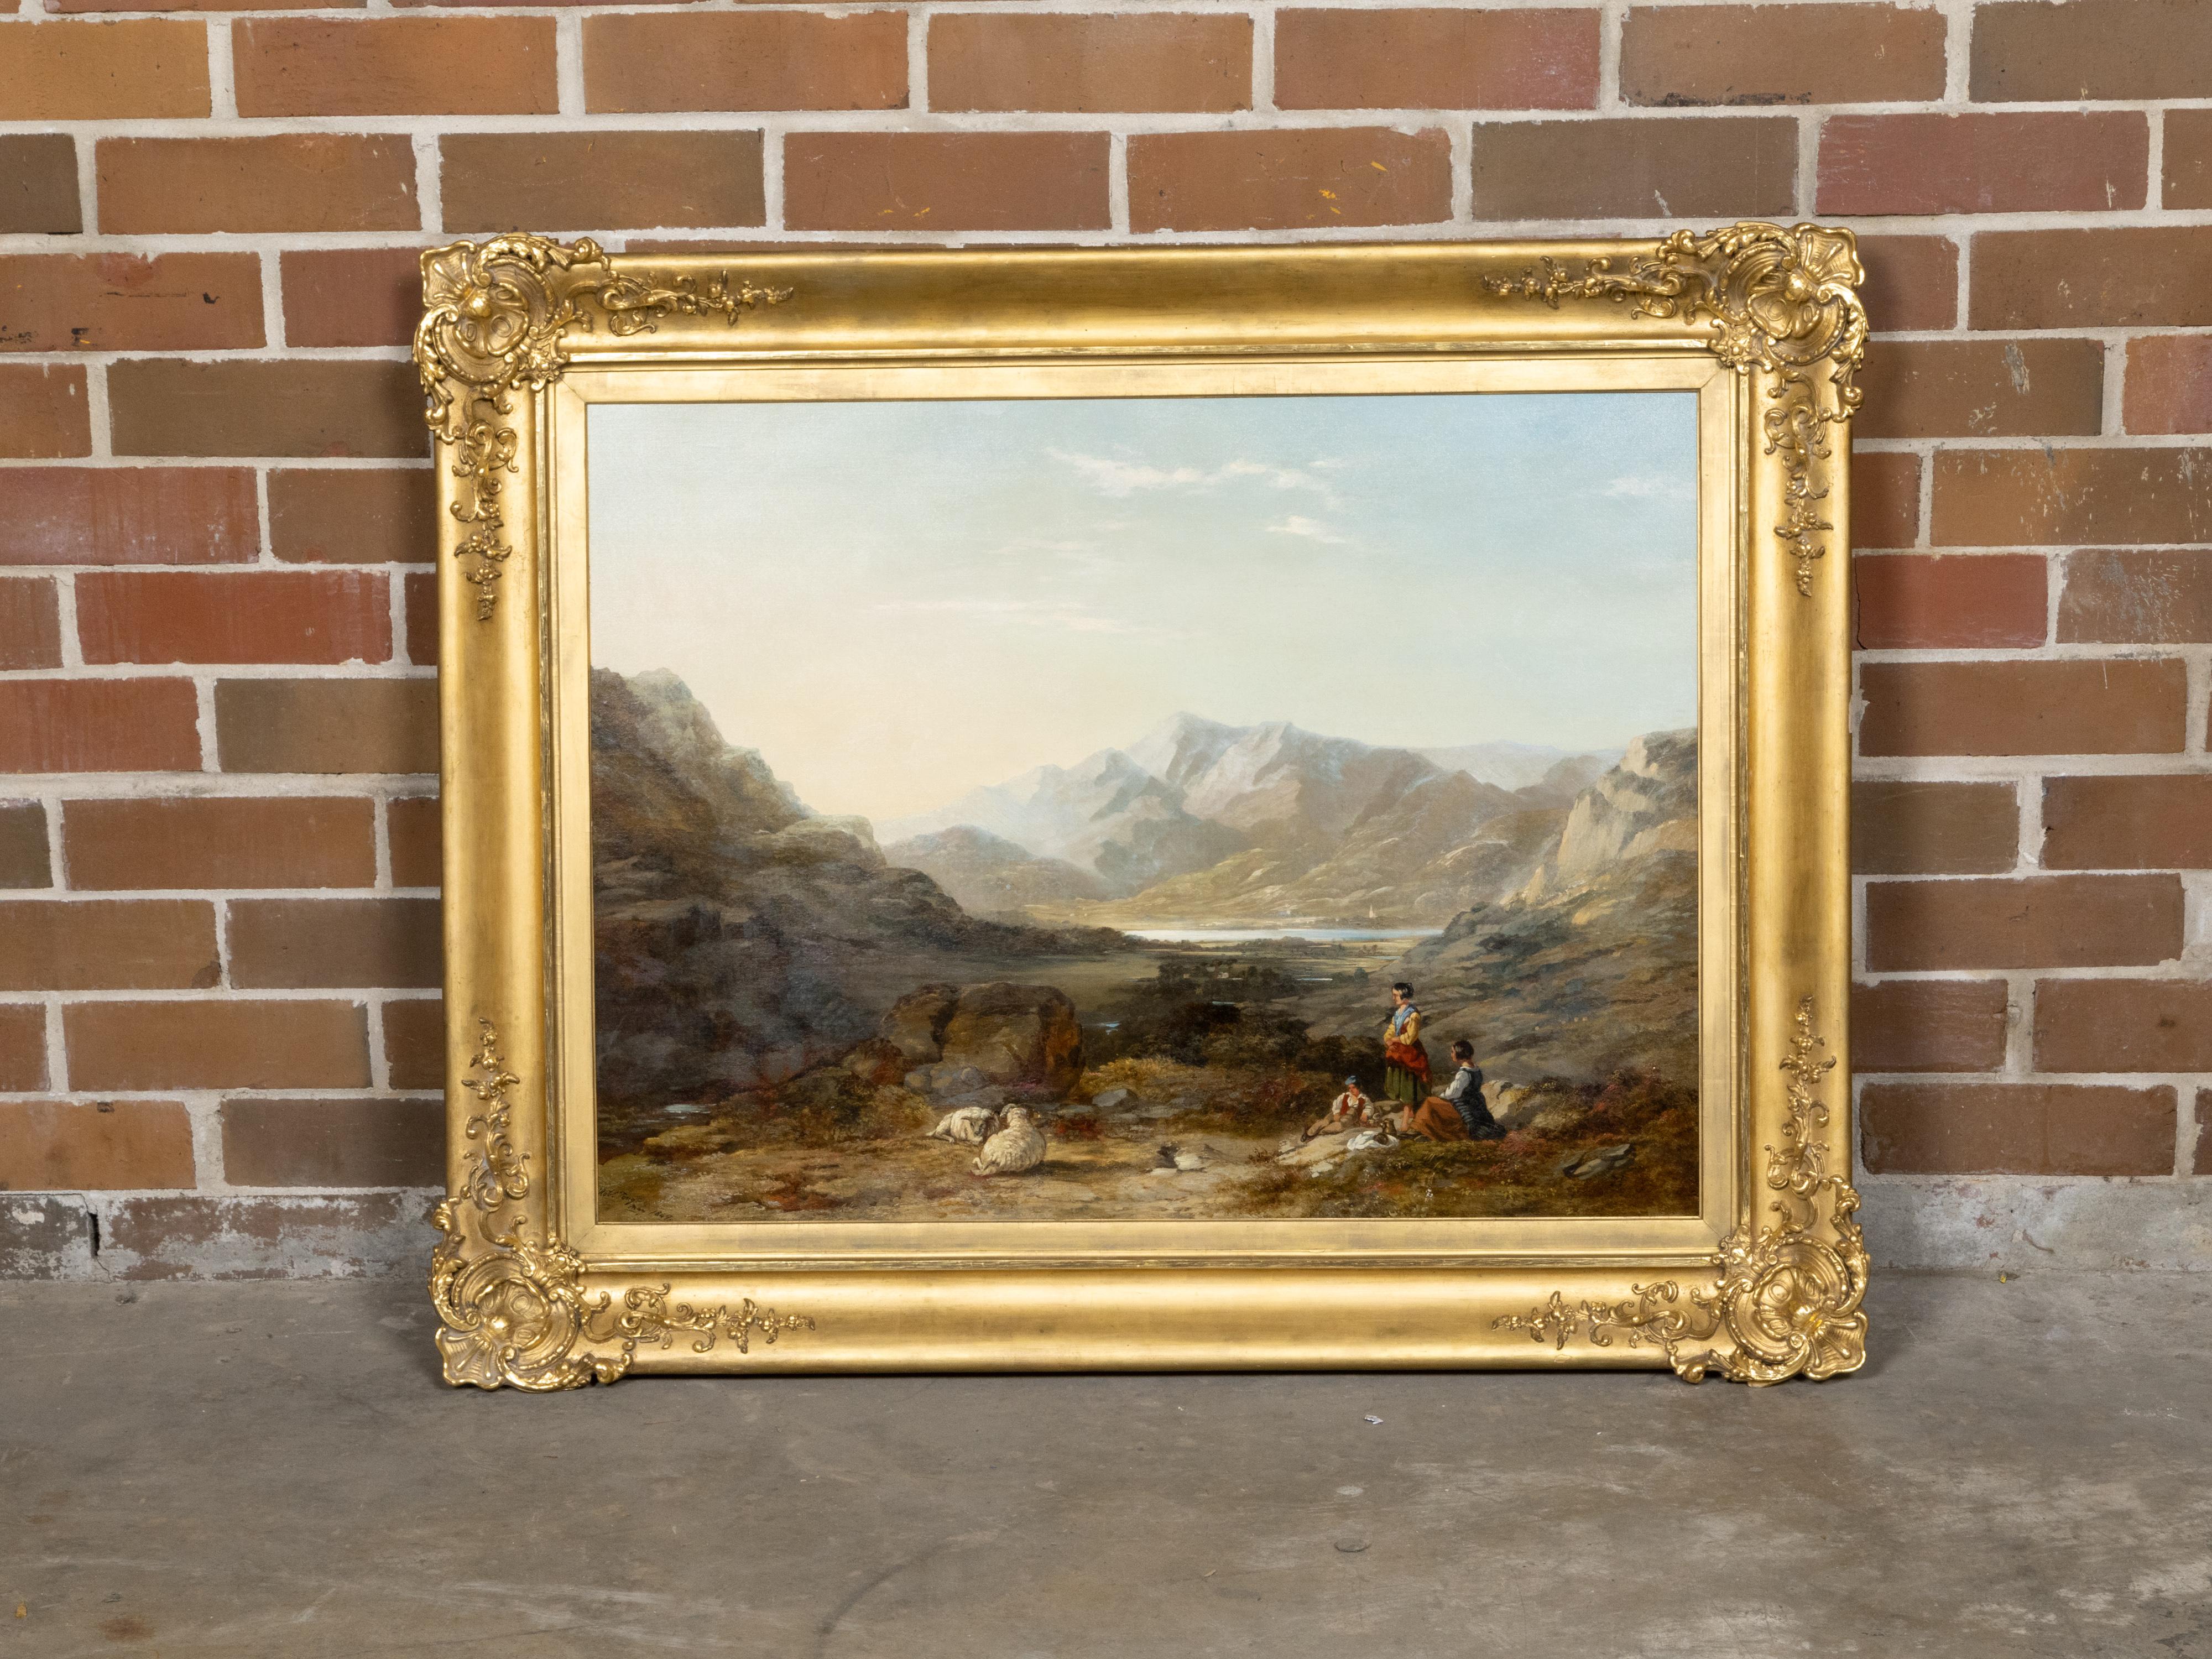 Ein Landschaftsgemälde in Öl auf Leinwand aus der Zeit um 1847 des britischen Malers Robert Tonge (1823 - 1856), signiert und datiert, das Reisende und Schafe in einer Landschaft mit einem See und Bergen im Hintergrund zeigt. Dieses fesselnde